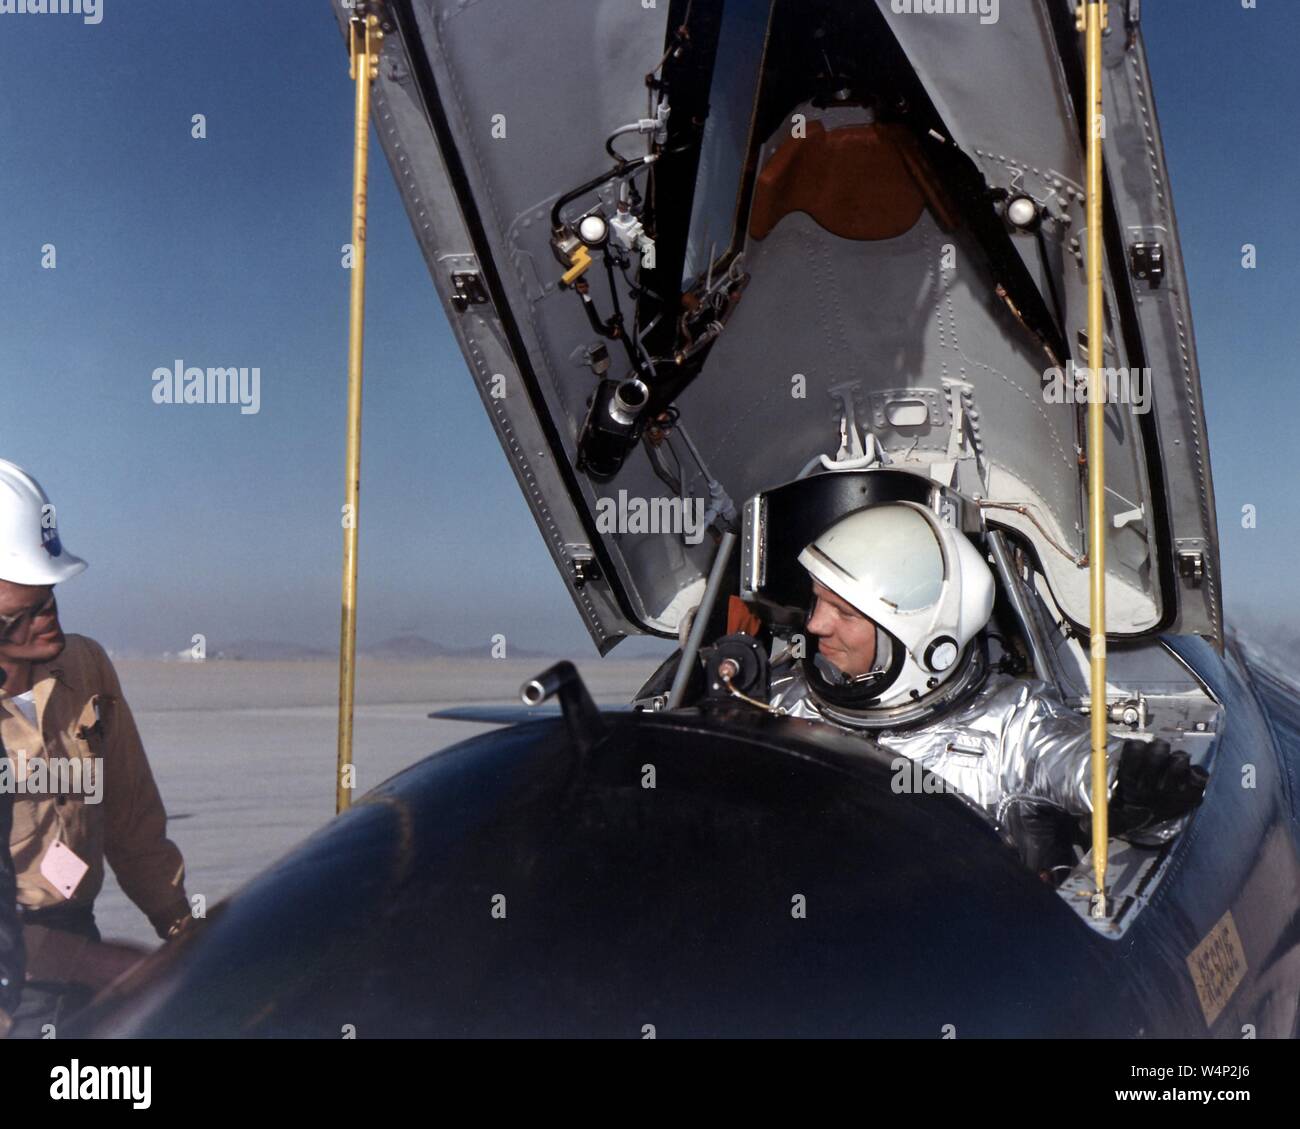 L'astronaute Neil Armstrong dans le cockpit de l'avion fusée X-15 Recherche après un vol de recherche, 1961. Droit avec la permission de la National Aeronautics and Space Administration (NASA). () Banque D'Images